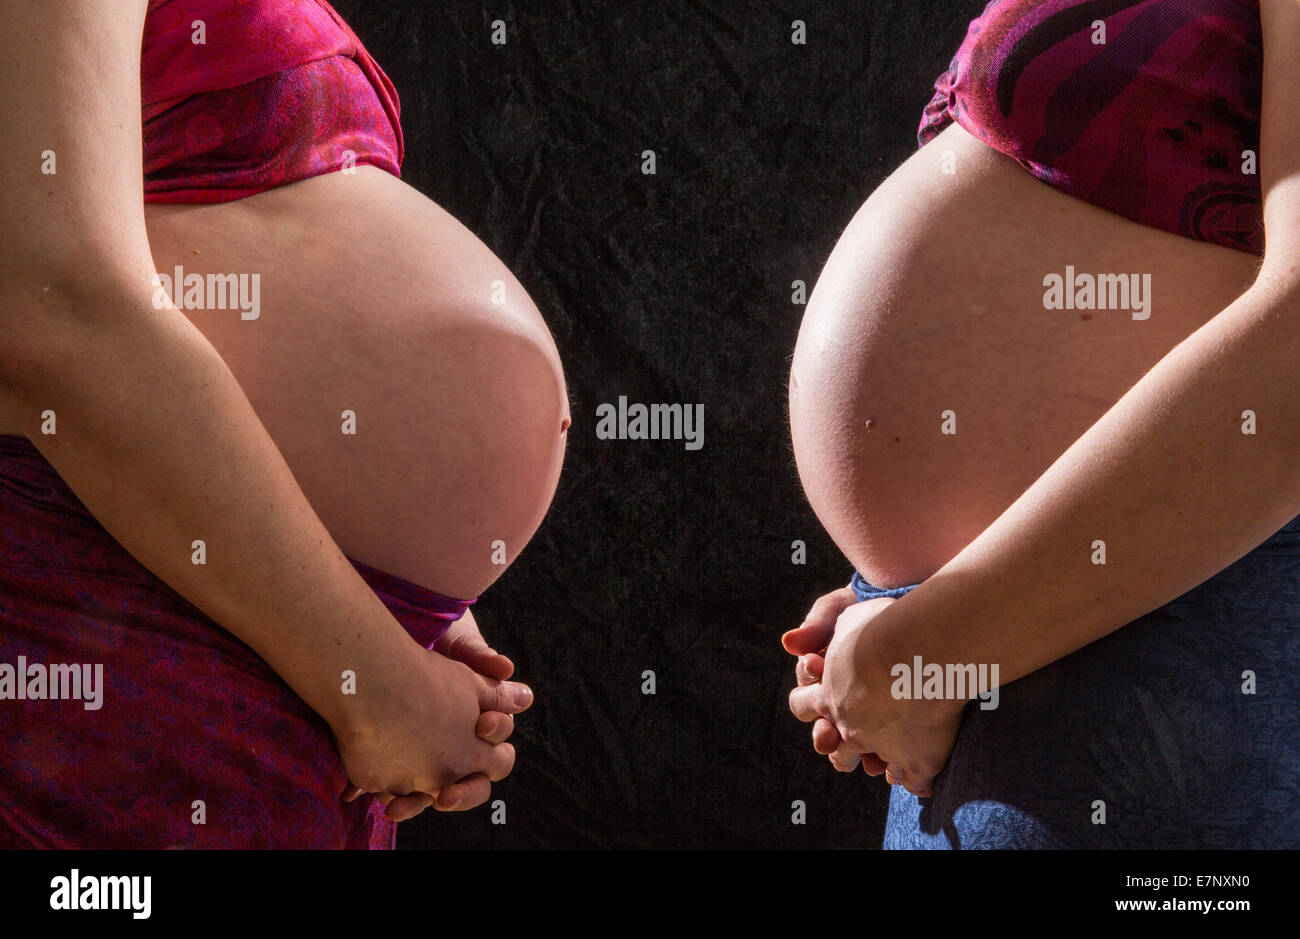 Femmes enceintes, femmes, femmes, ventre, Européen, Suisse, Europe, la grossesse Banque D'Images